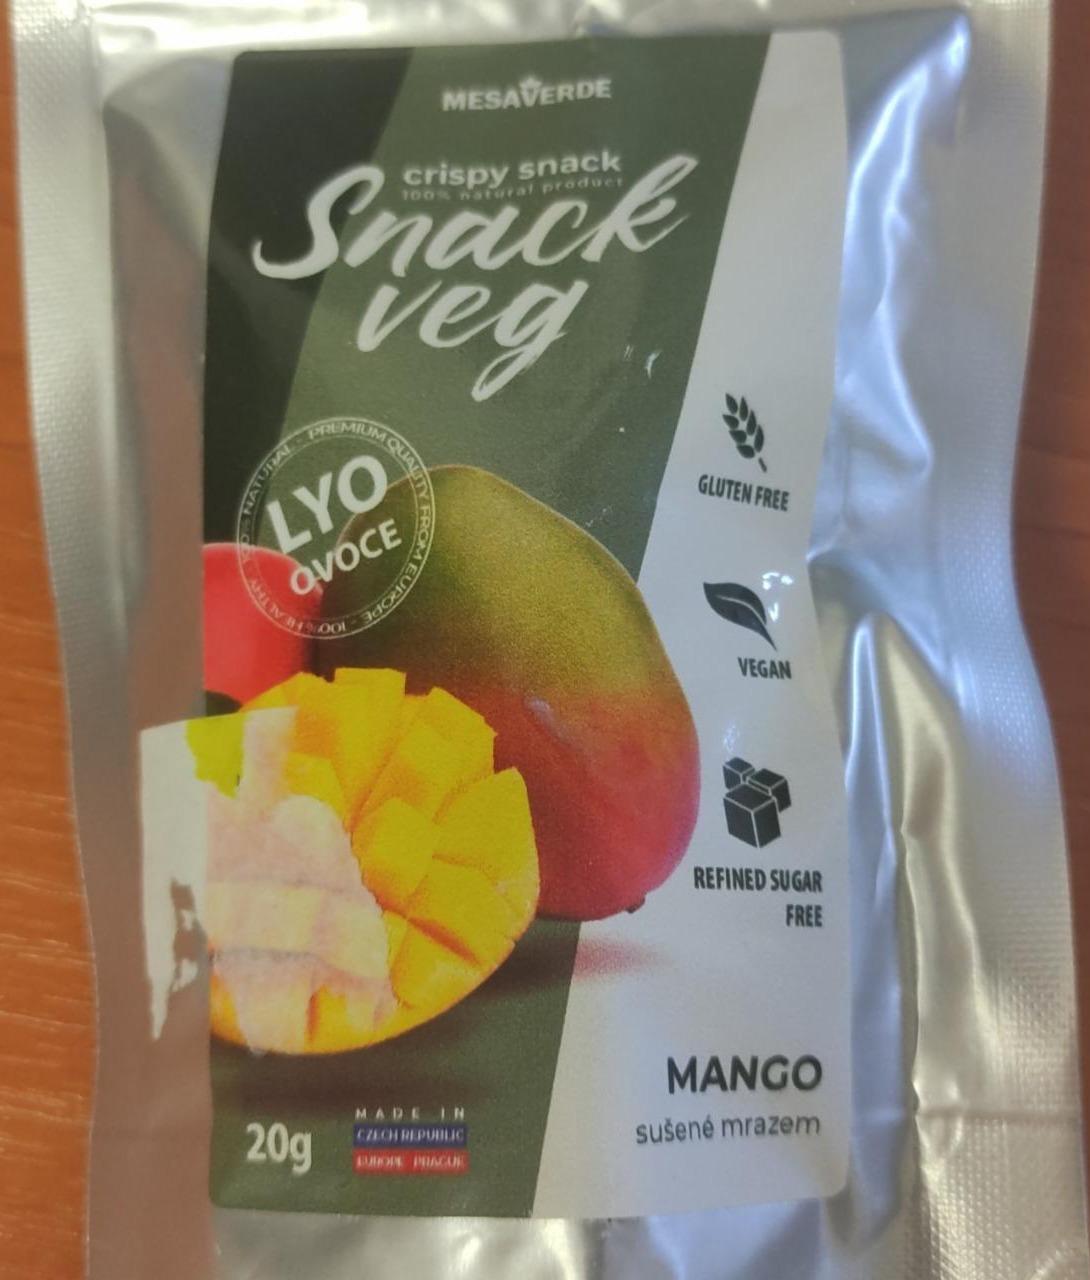 Fotografie - Snack Veg Mango sušené mrazem Mesaverde